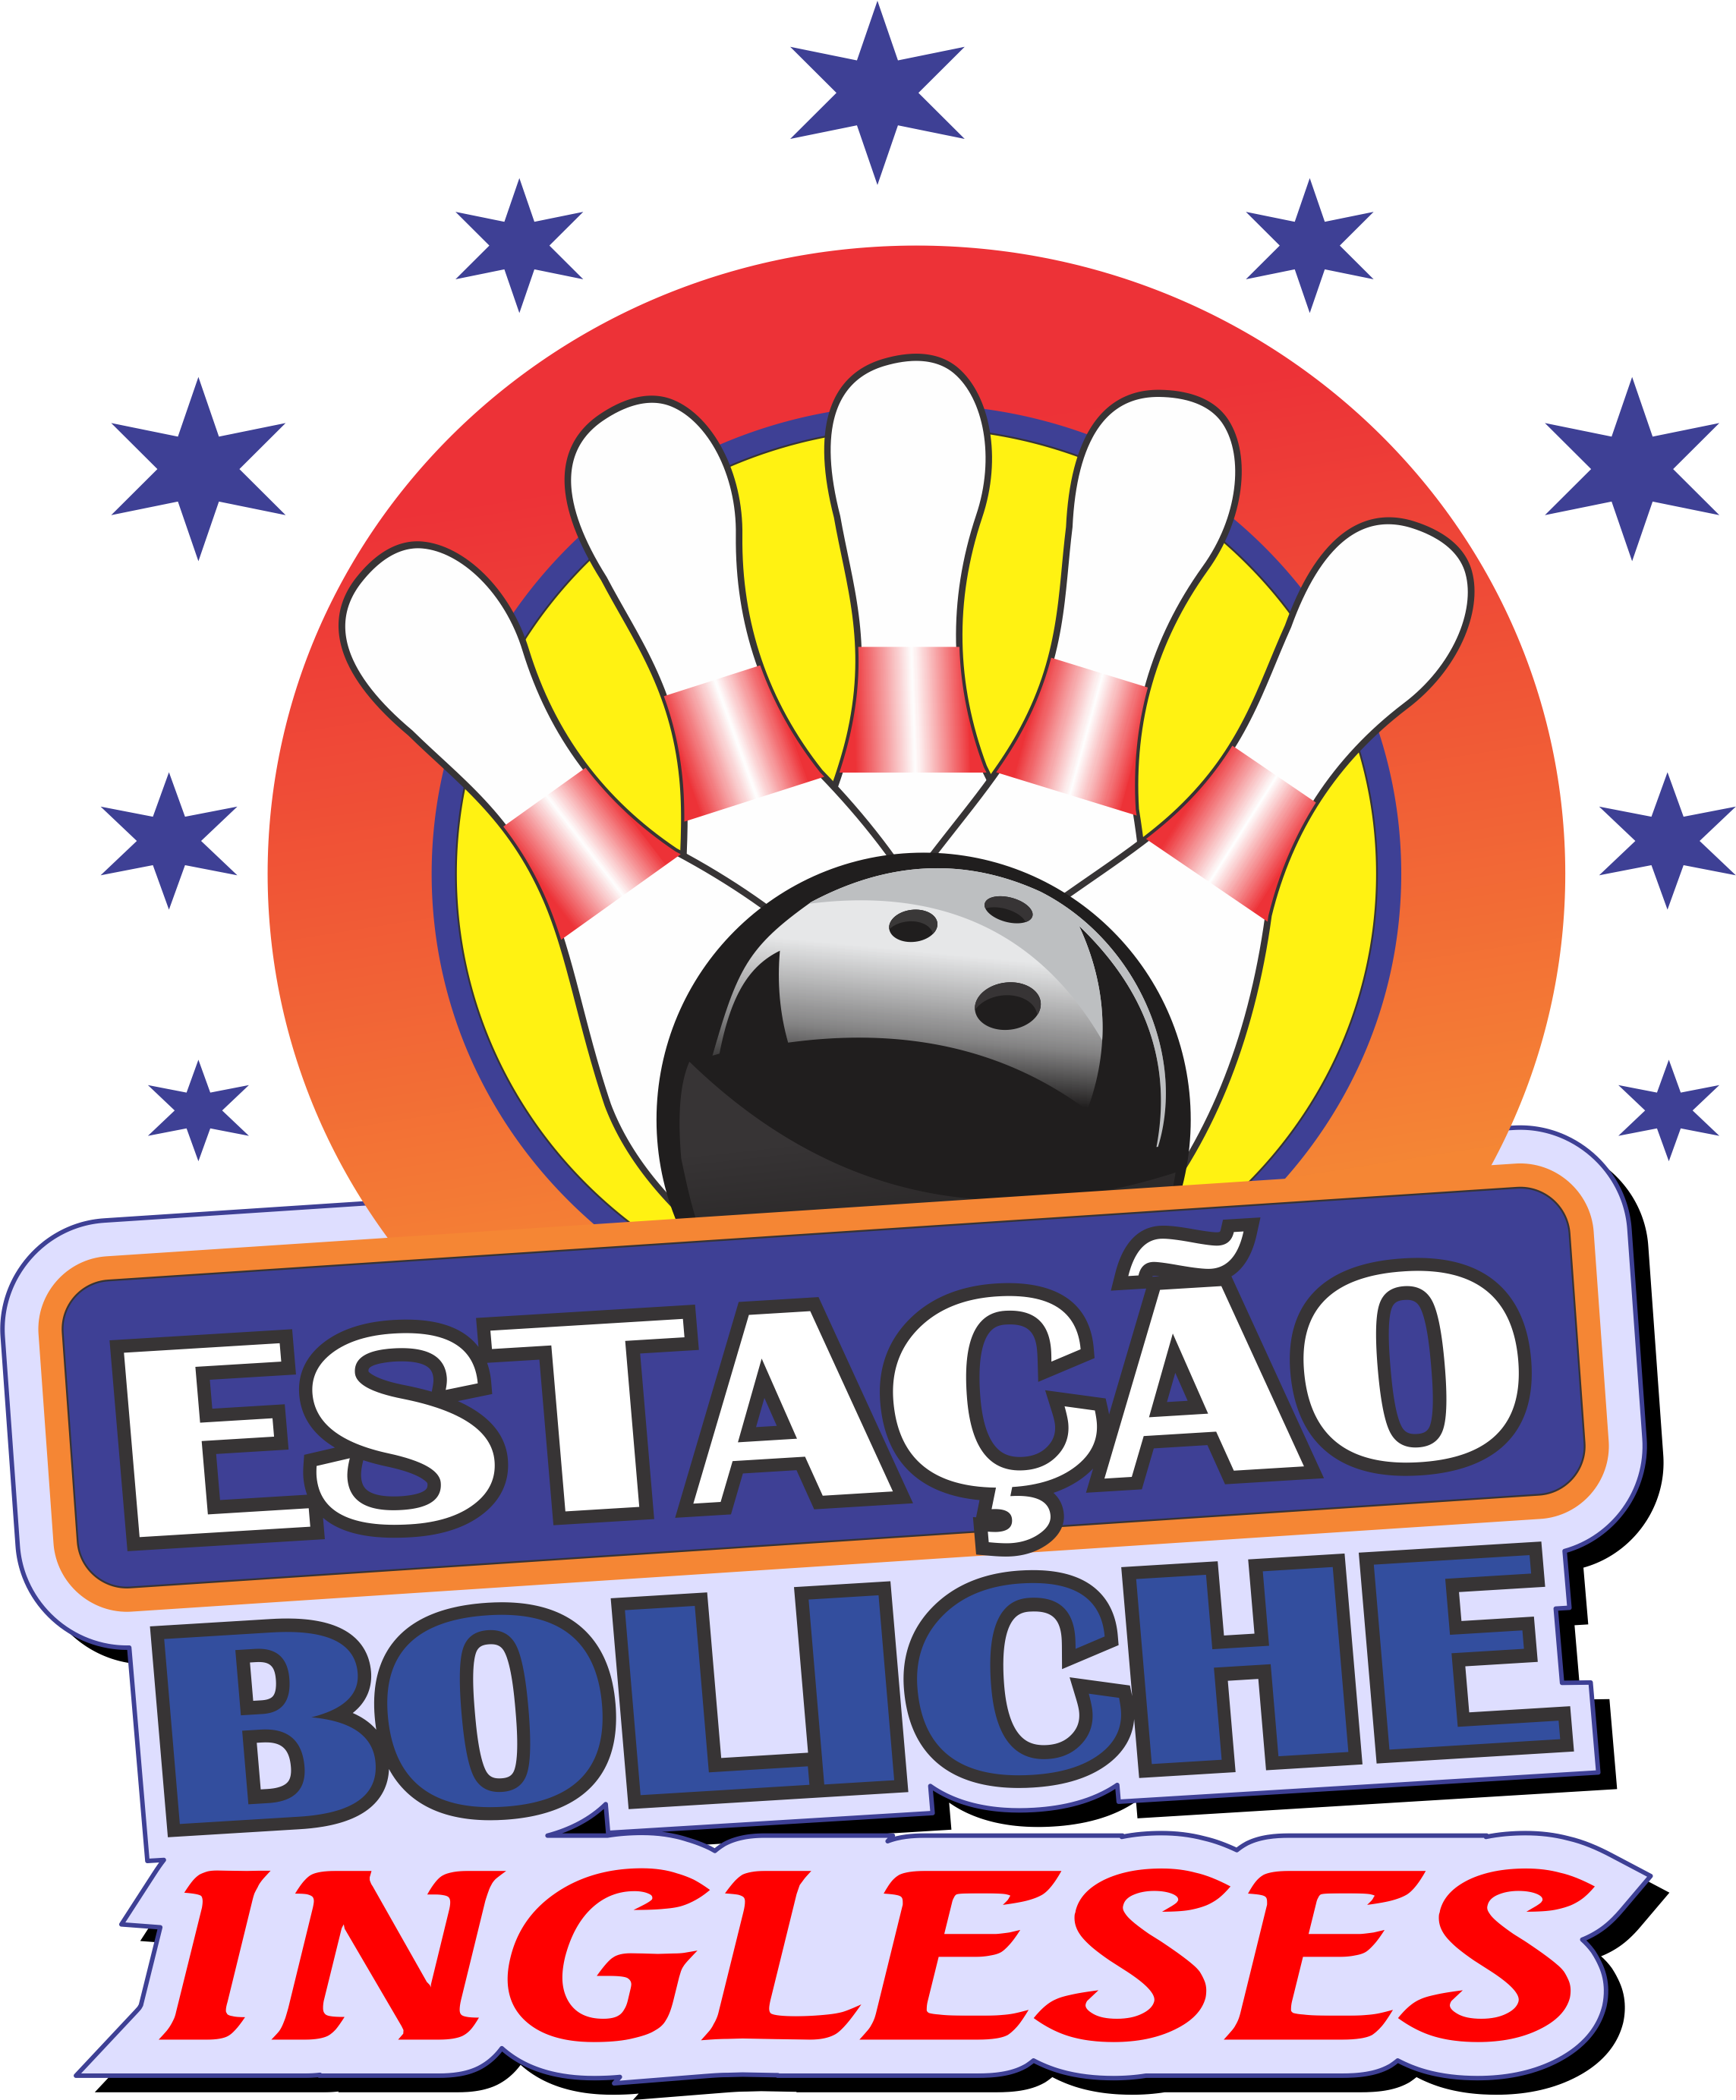 ESTACAO BOLICHE